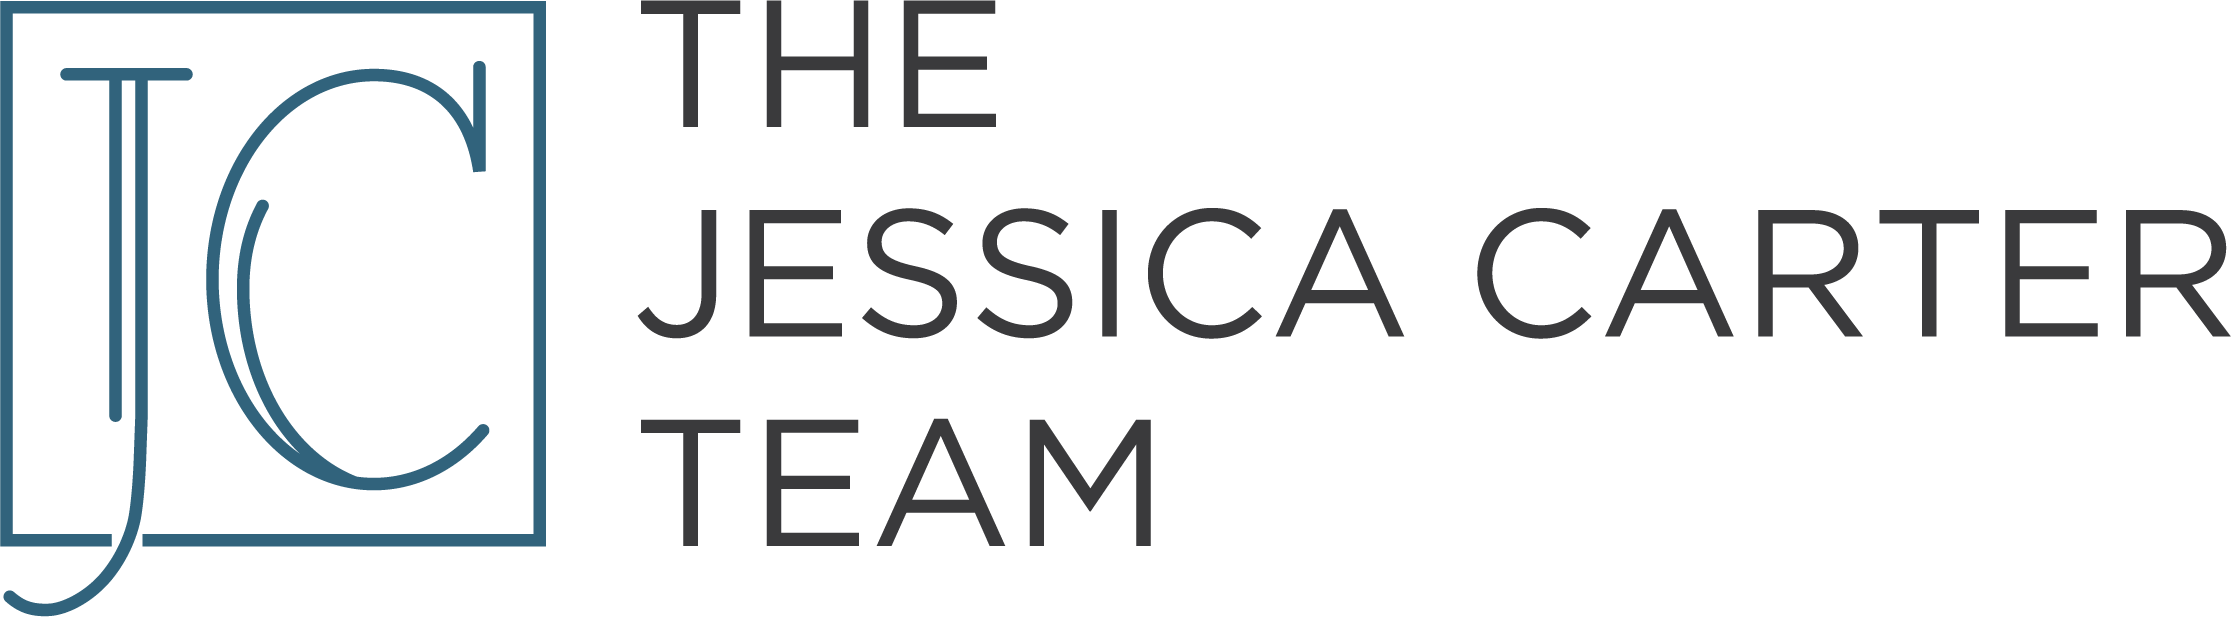 Jessica Carter Team Logo